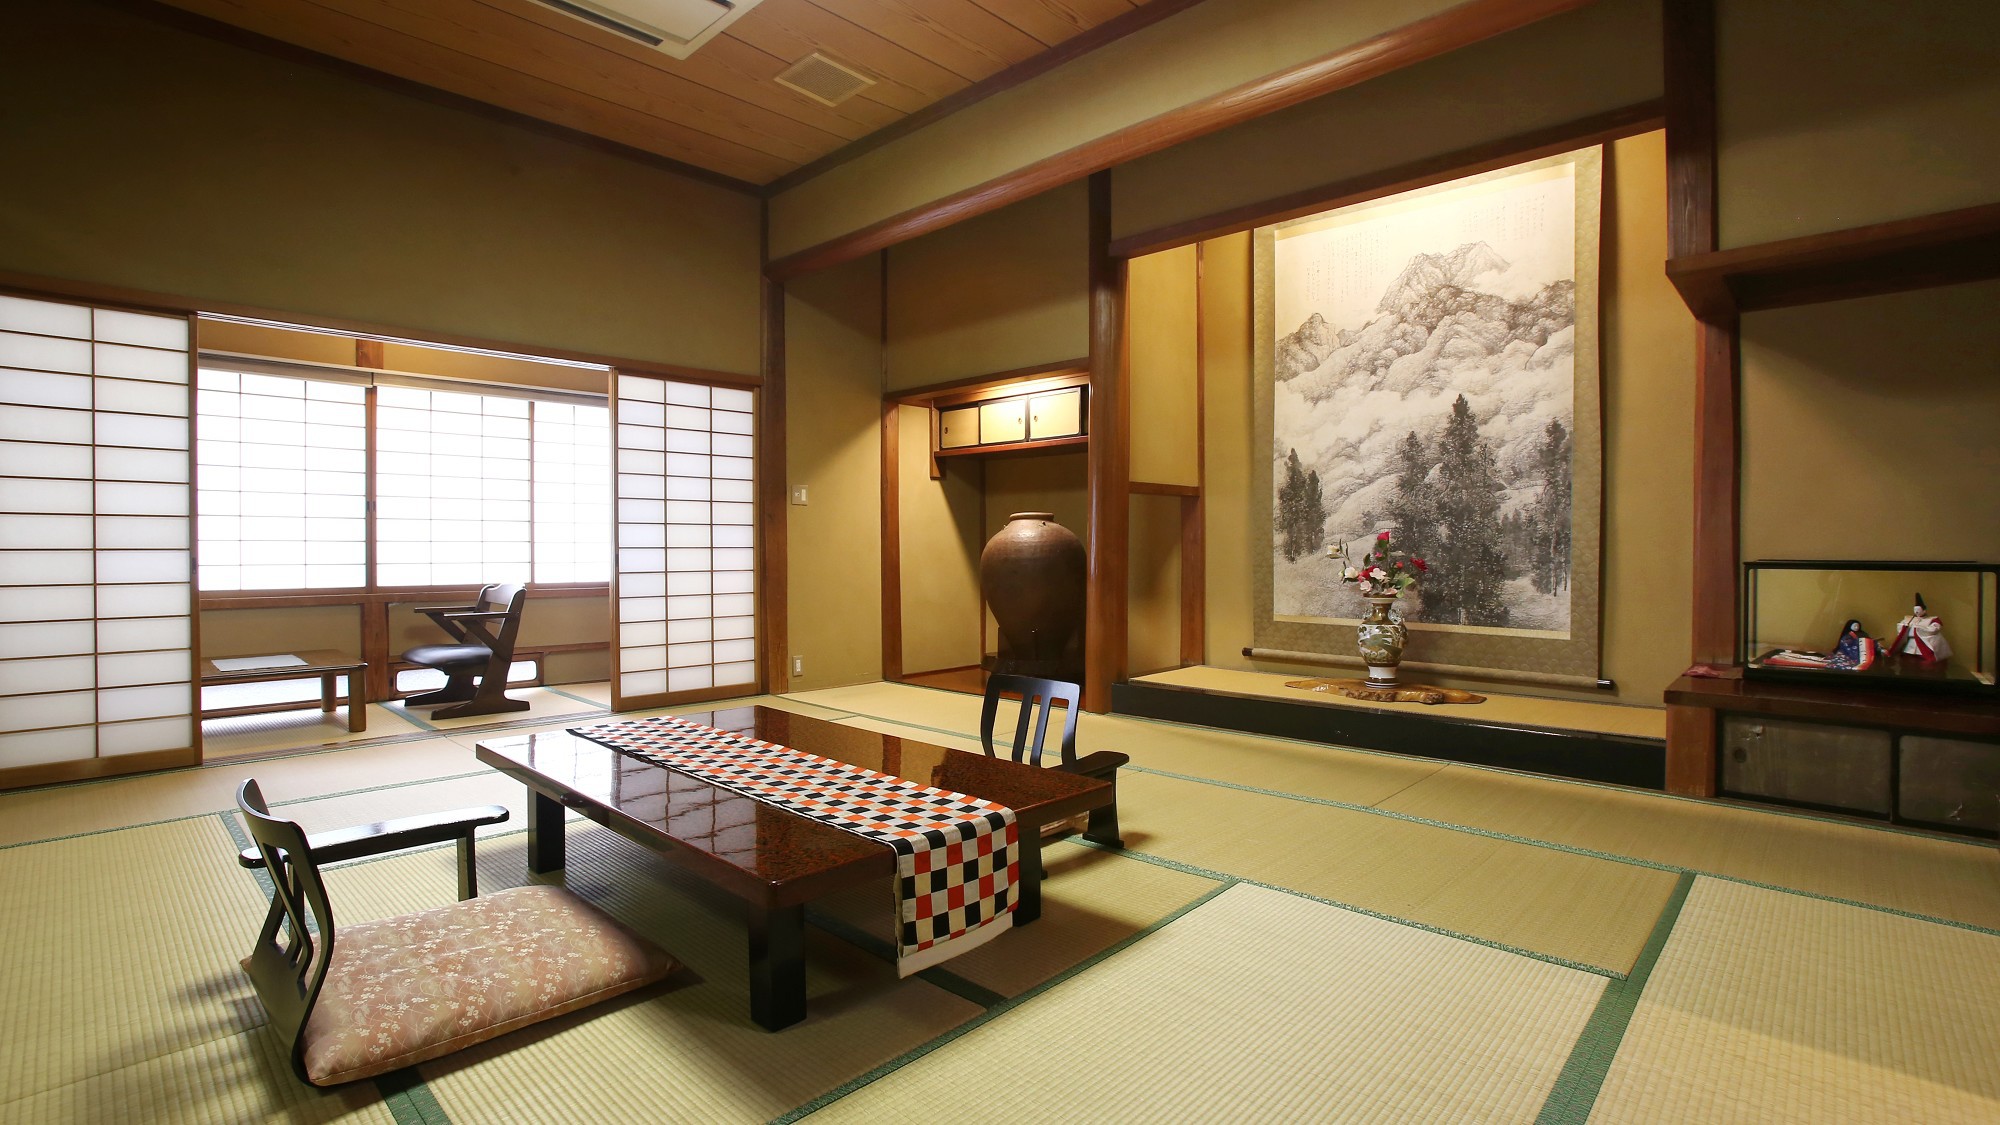 【翠玉】木曽川を望む、総檜造りの特別室。木曽檜を使った総檜造り、由緒ある日本間の特別室。